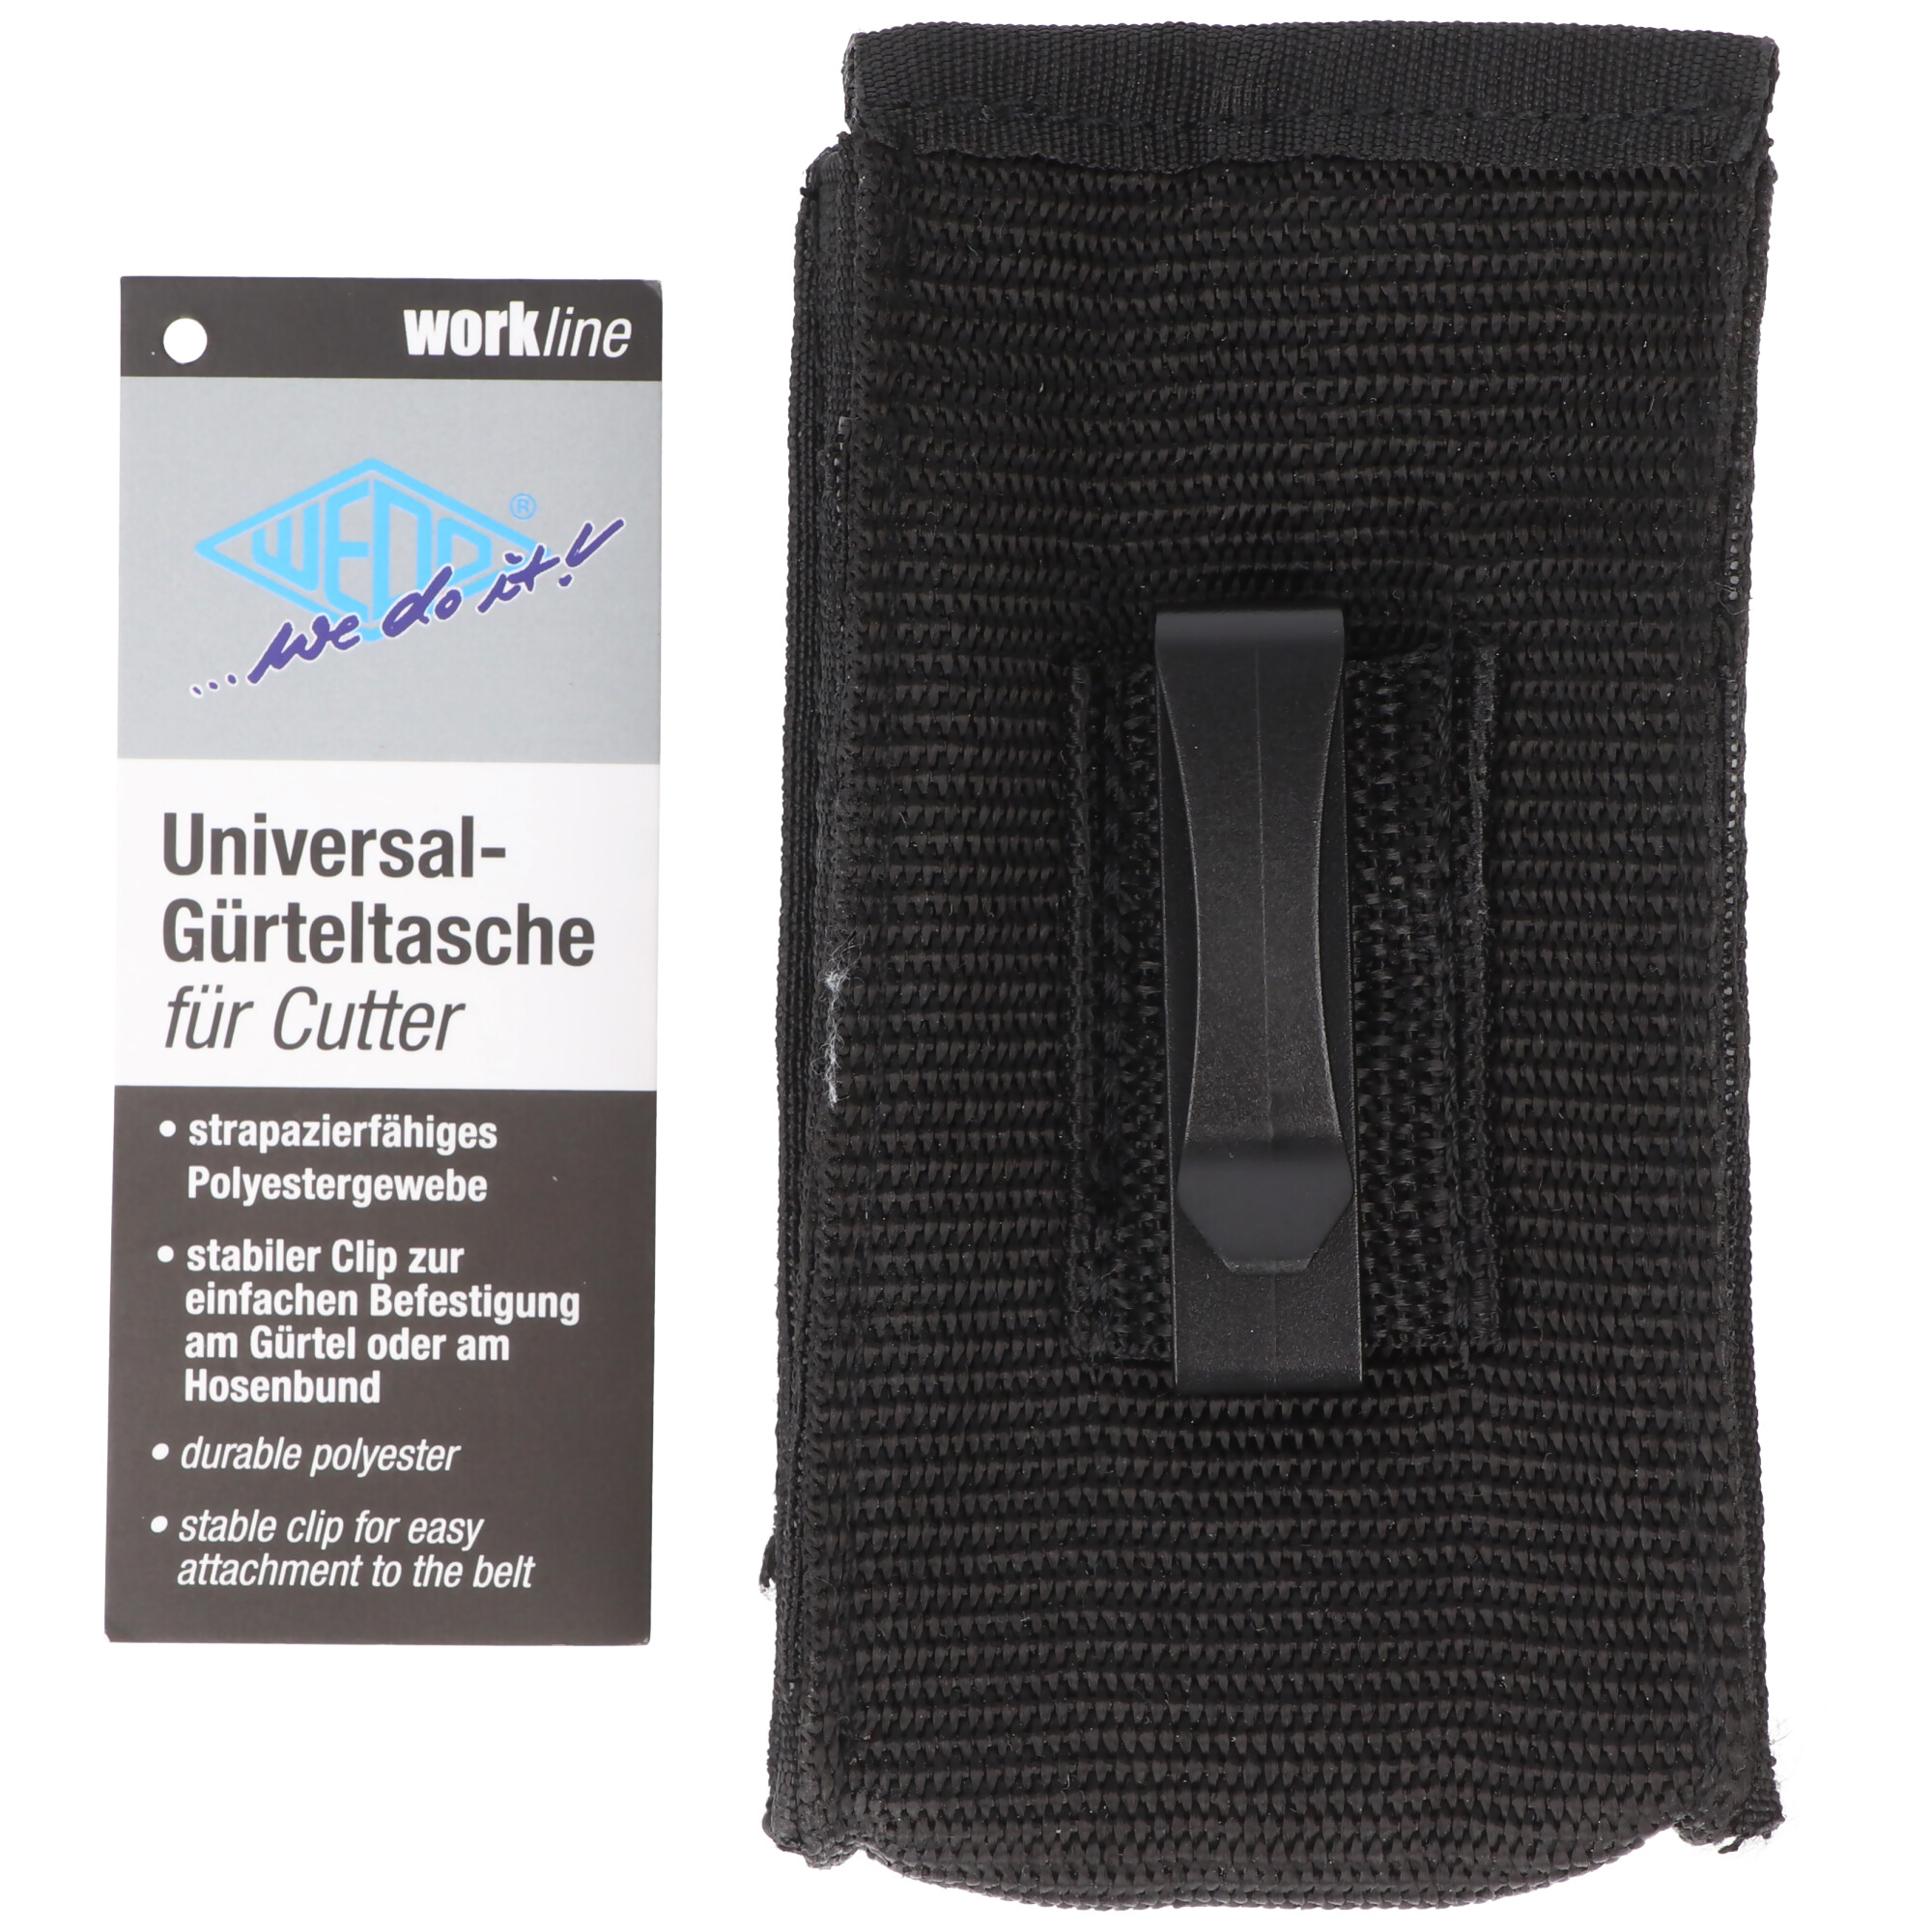 Universal-Gürteltasche für Cutter, strapazierfähiges Polyestergewebe, mit Clip zur einfachen Befestigung am Gürtel oder am Hosenbund